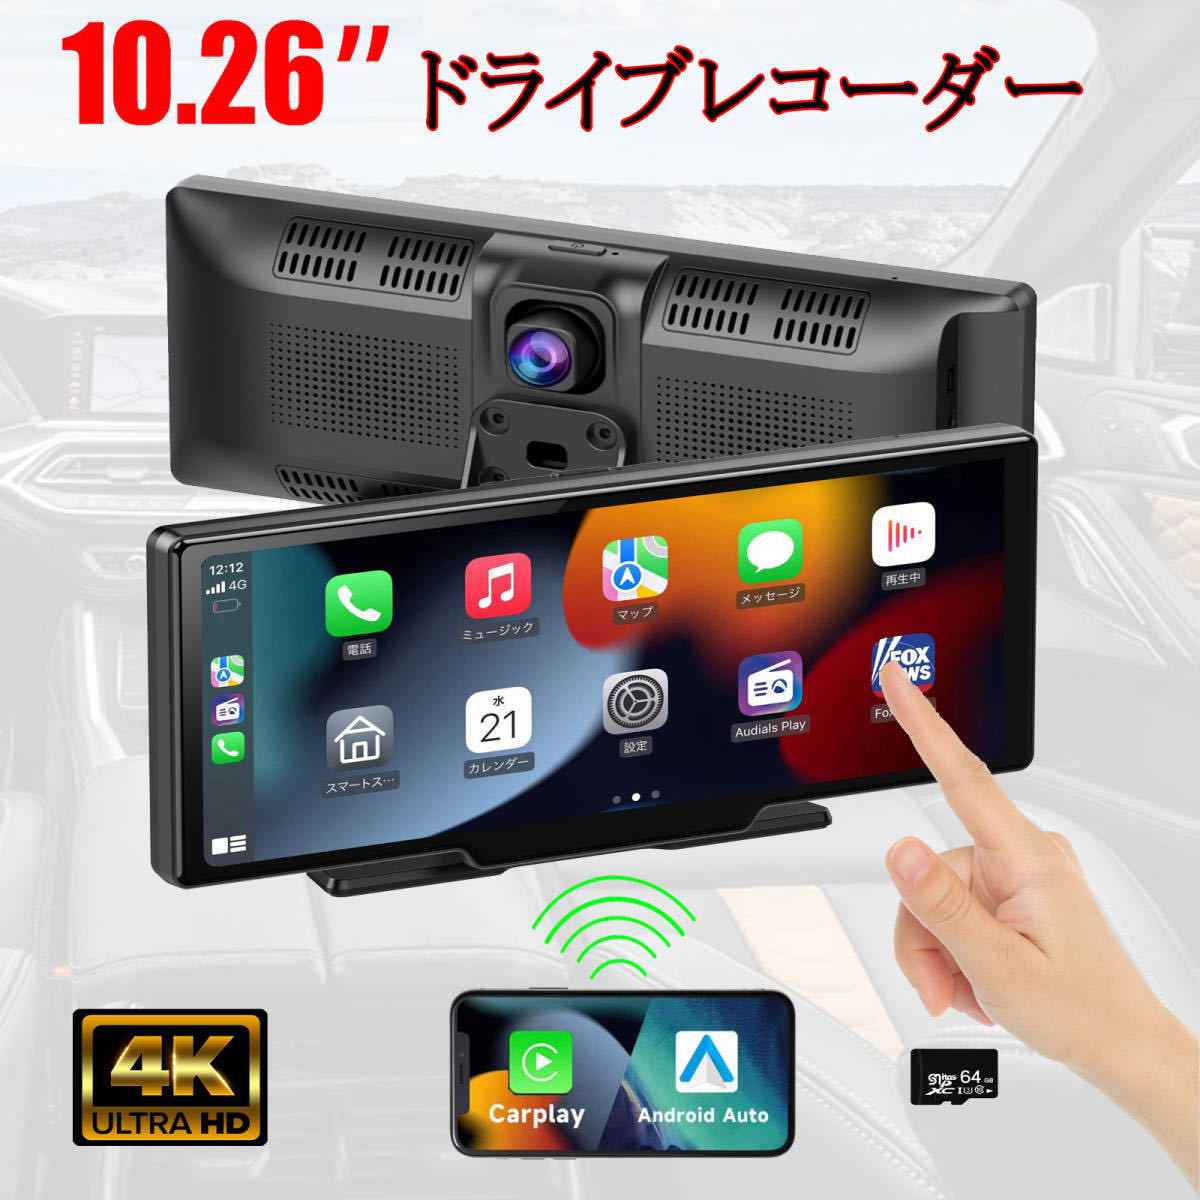 10.26インチ大画面CarPlay /Android Auto対応 動画再生 リアカメラー付き IPS液晶 ナビ 12/24V 対応 64GbSDカード付き